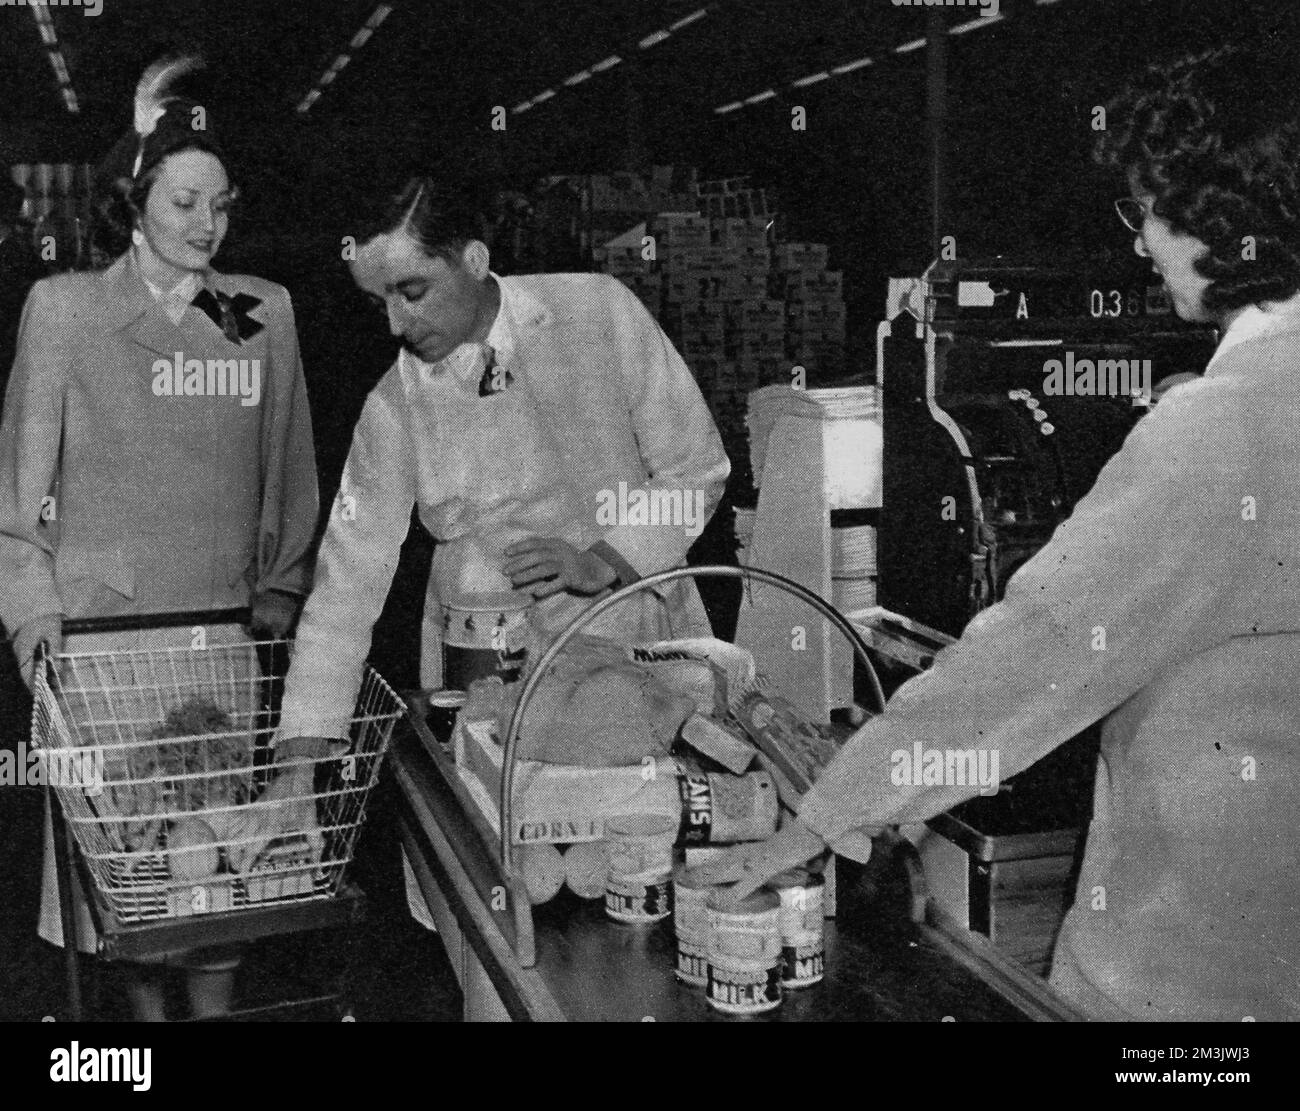 Foto aus einem US-Supermarkt im Jahr 1948, „wo Großbritanniens Schlangen und Rationen unbekannt sind“, zeigt eine Frau, die an der Kasse bedient wird. Das Konzept des Supermarkts, in dem alle Arten von Waren an einem Ort ohne die Hilfe eines Ladenbesitzers gekauft und dann an der Kasse bezahlt werden konnten, wurde erstmals in Amerika eingeführt, wo es nach dem Zweiten Weltkrieg keine Rationierung gab Dieses Bild war eines von einer Serie, die in einem A&amp;P-Supermarkt aufgenommen wurde; Amerikas größte Kette begann 1937 und mit 1670 Supermärkten bis 1948. Datum: 1948 Stockfoto